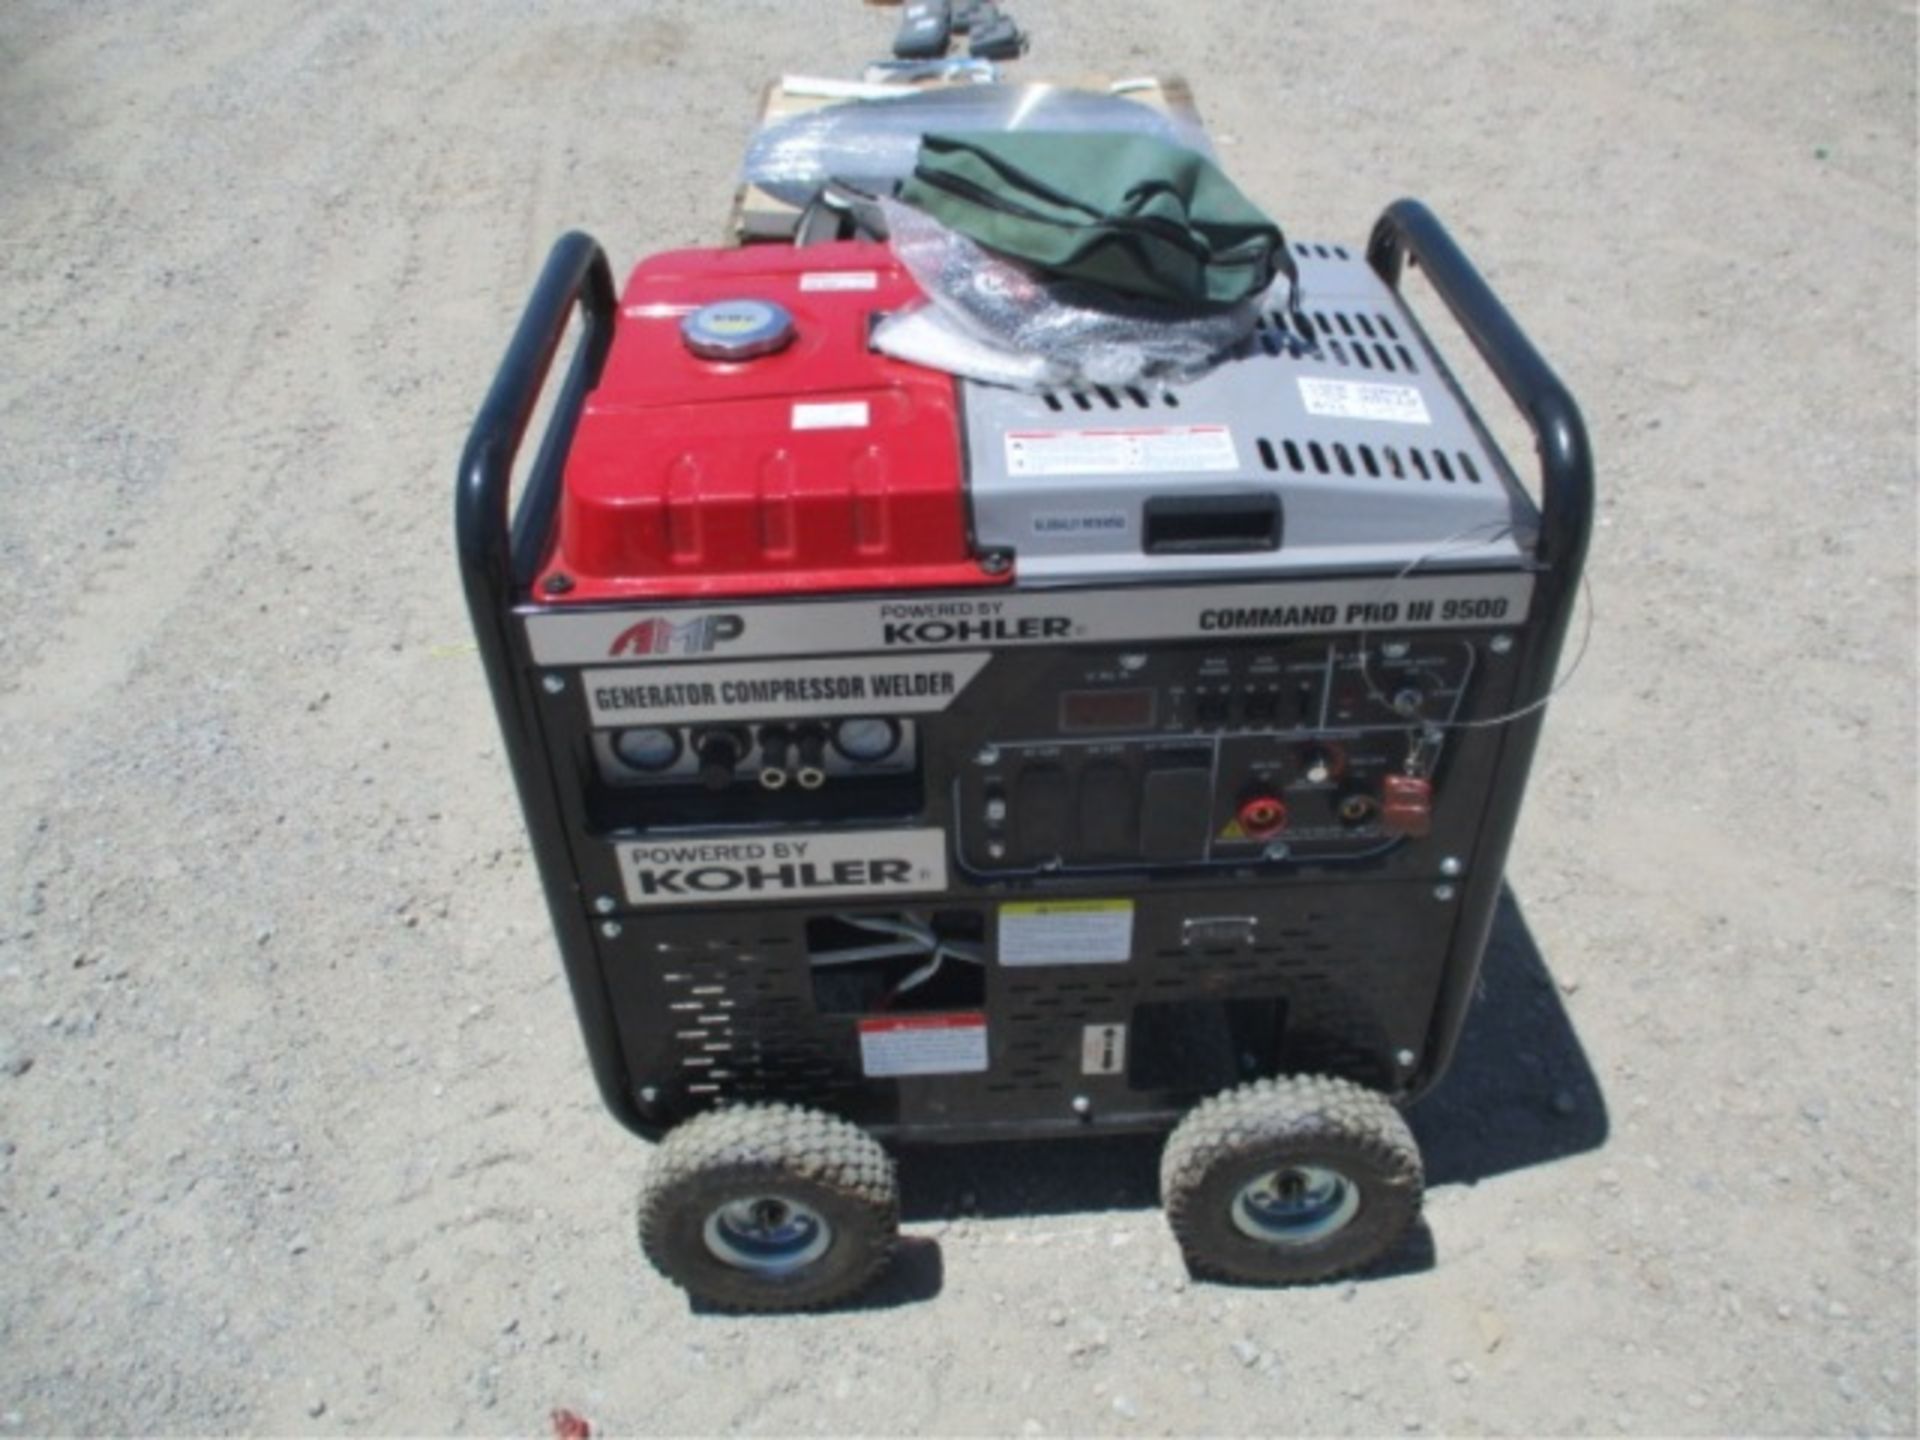 Kohler Command Pro III 9500 Generator Compressor, Welder, Gas Powered, S/N: 4919803918 - Image 2 of 28